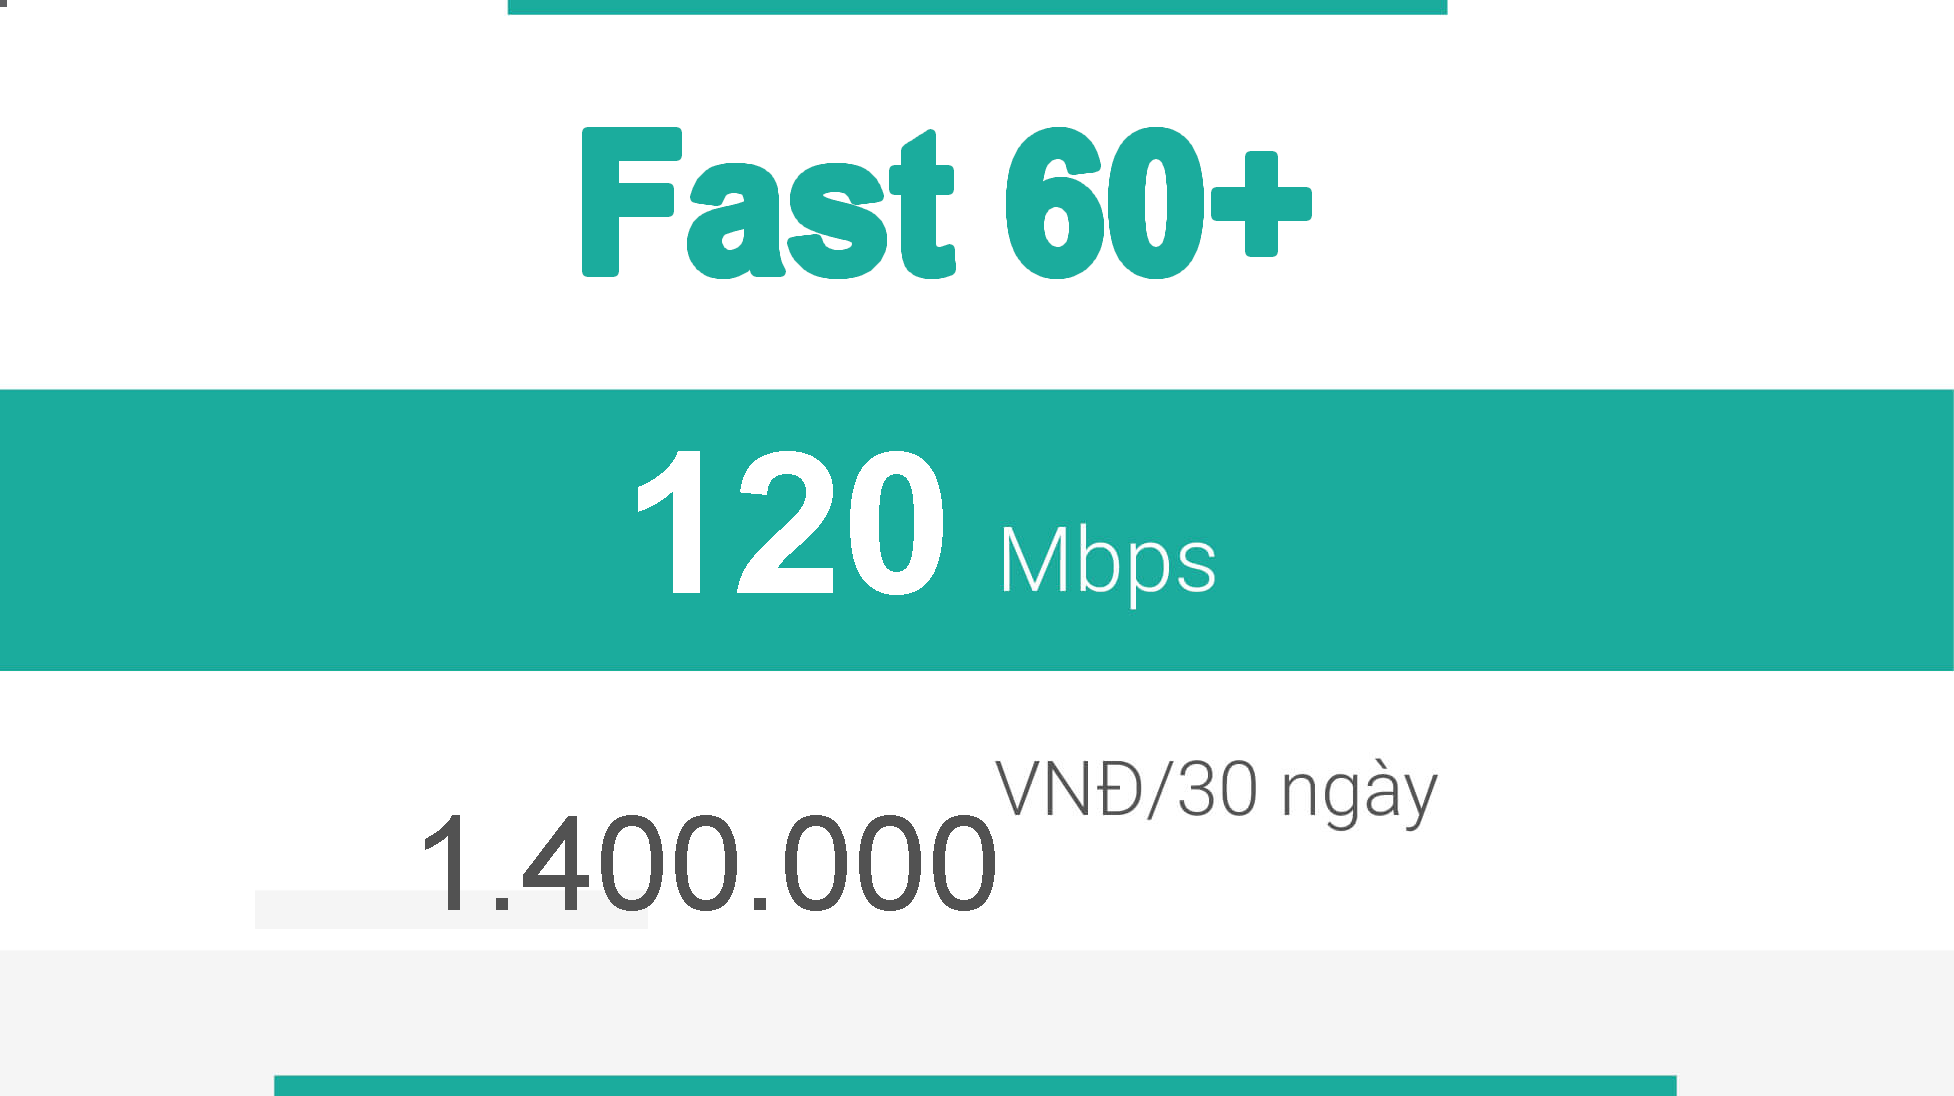 fast_60plus